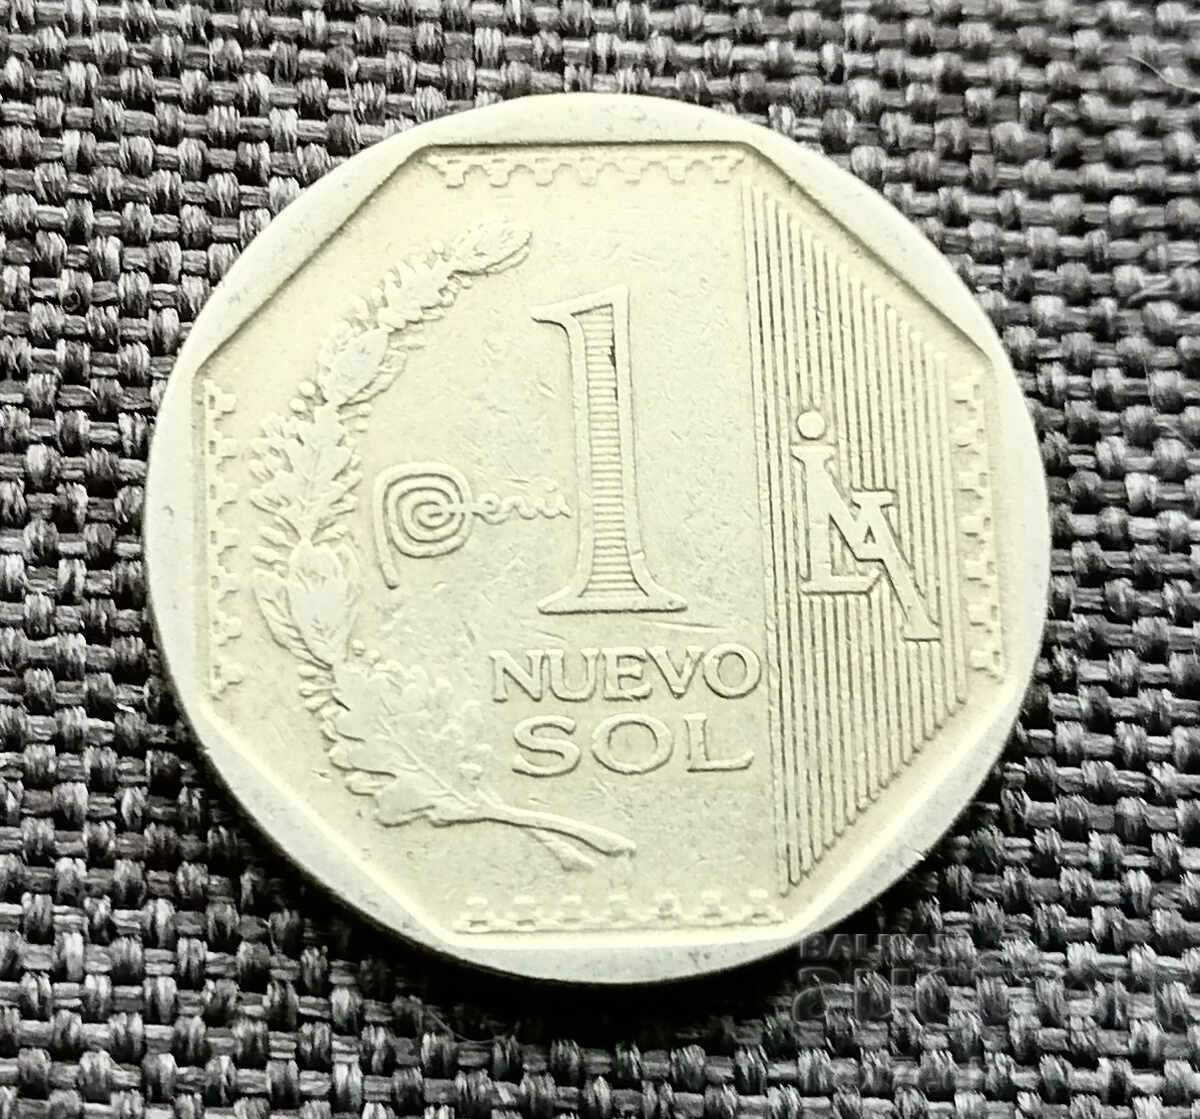 ❤️ ⭐ Coin Peru 2014 1 sol ⭐ ❤️